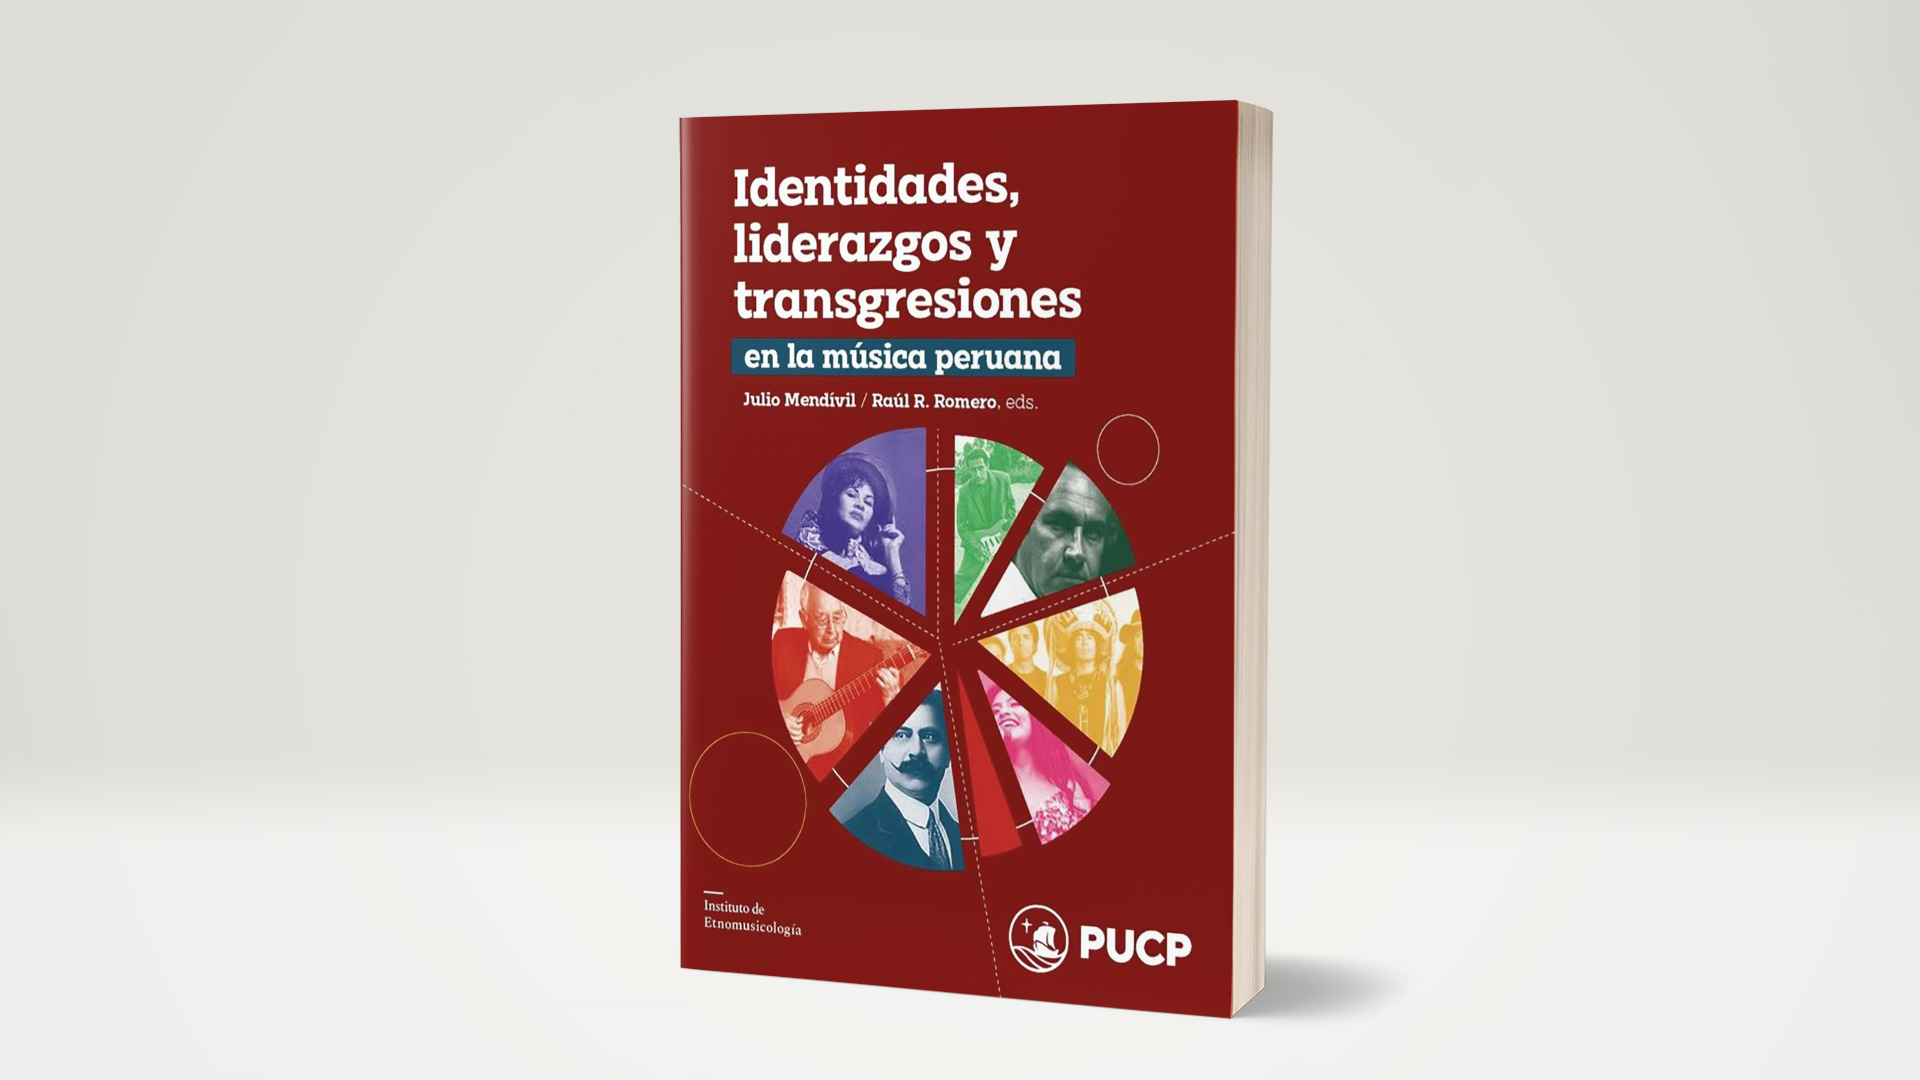 El libro publicado por el Instituto de Etnomusicología PUCP presenta una aproximación académica al panorama actual de la música peruana